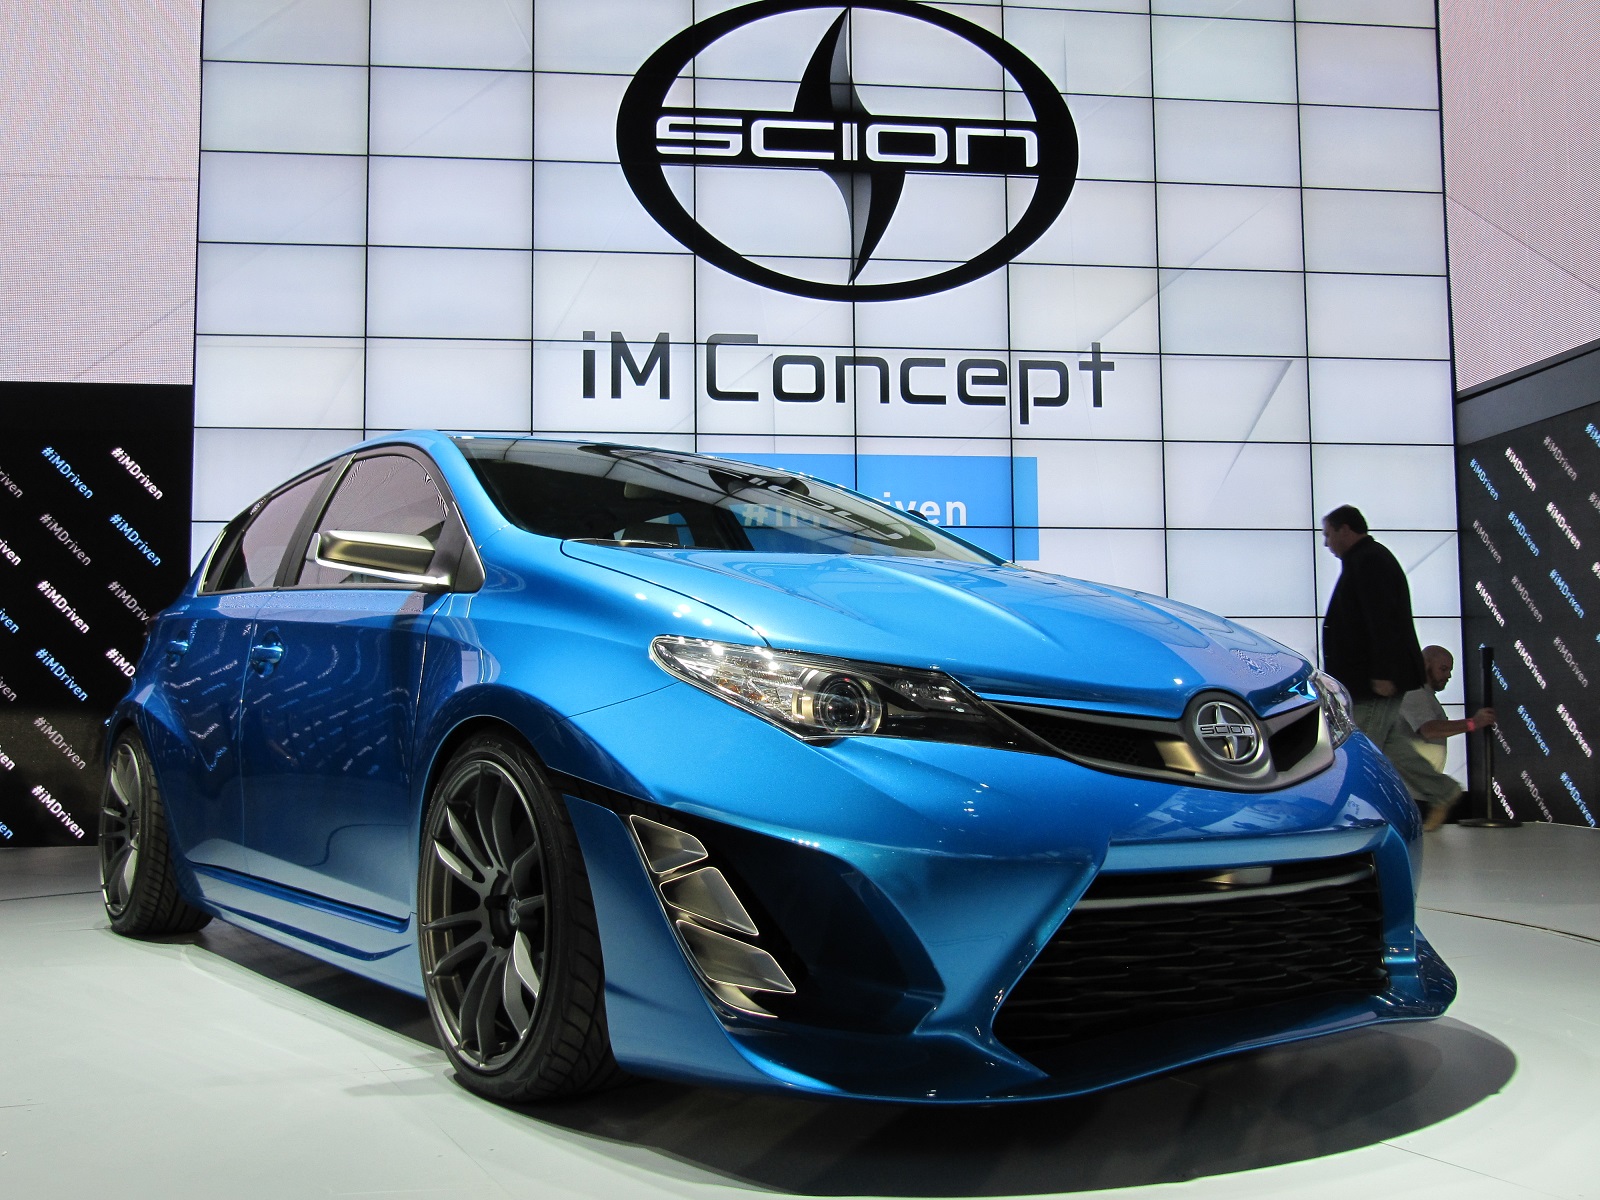 Scion iM Concept Previews New Compact Five-Door Hatchback